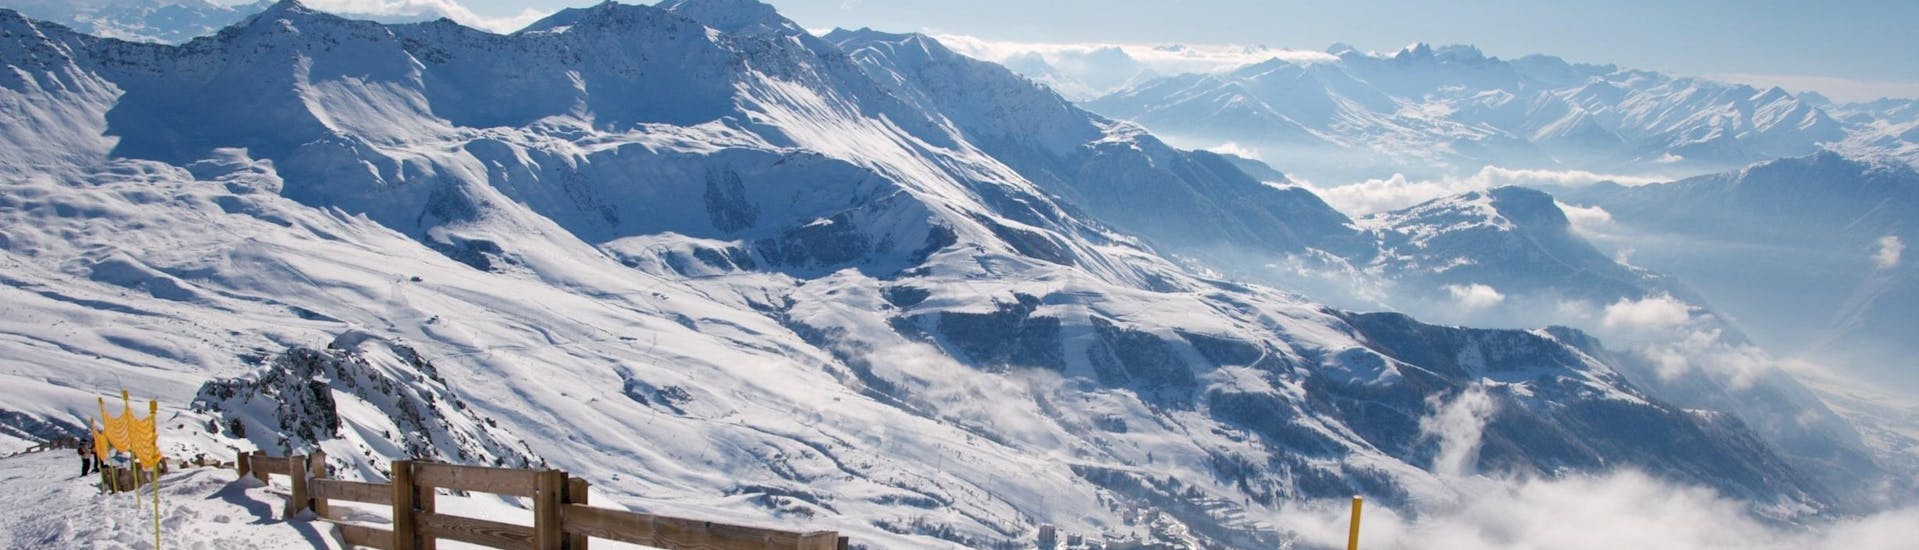 Vue sur le ciel bleu surplombant les montagnes de Valmorel où les écoles locales proposent des cours de ski.